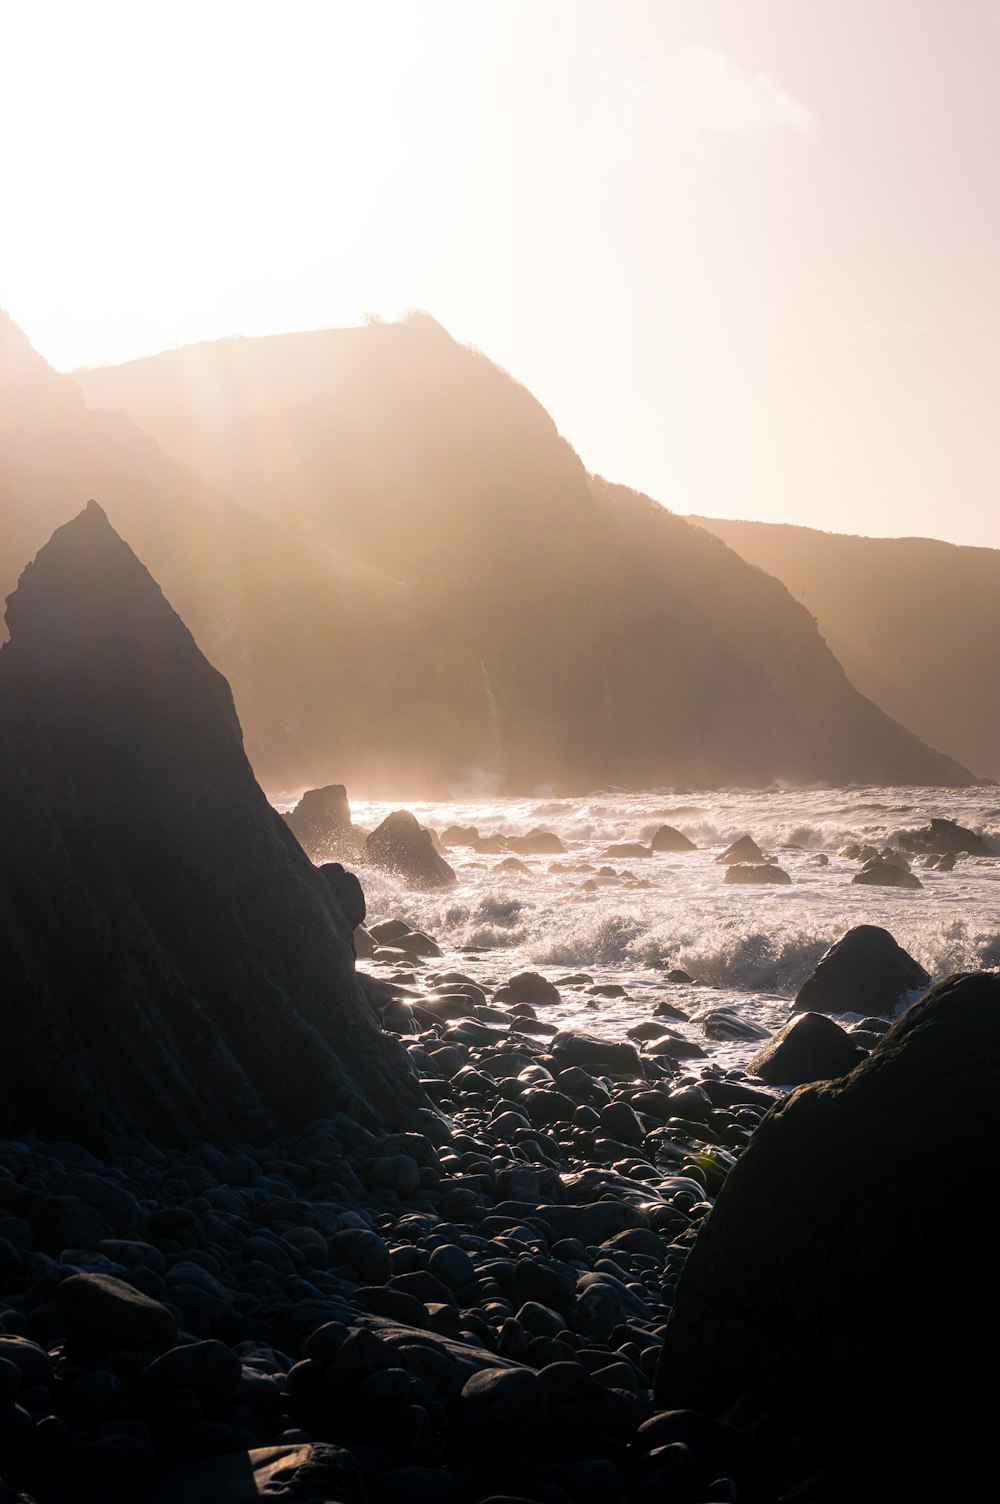 the sun shines on a rocky beach near the ocean